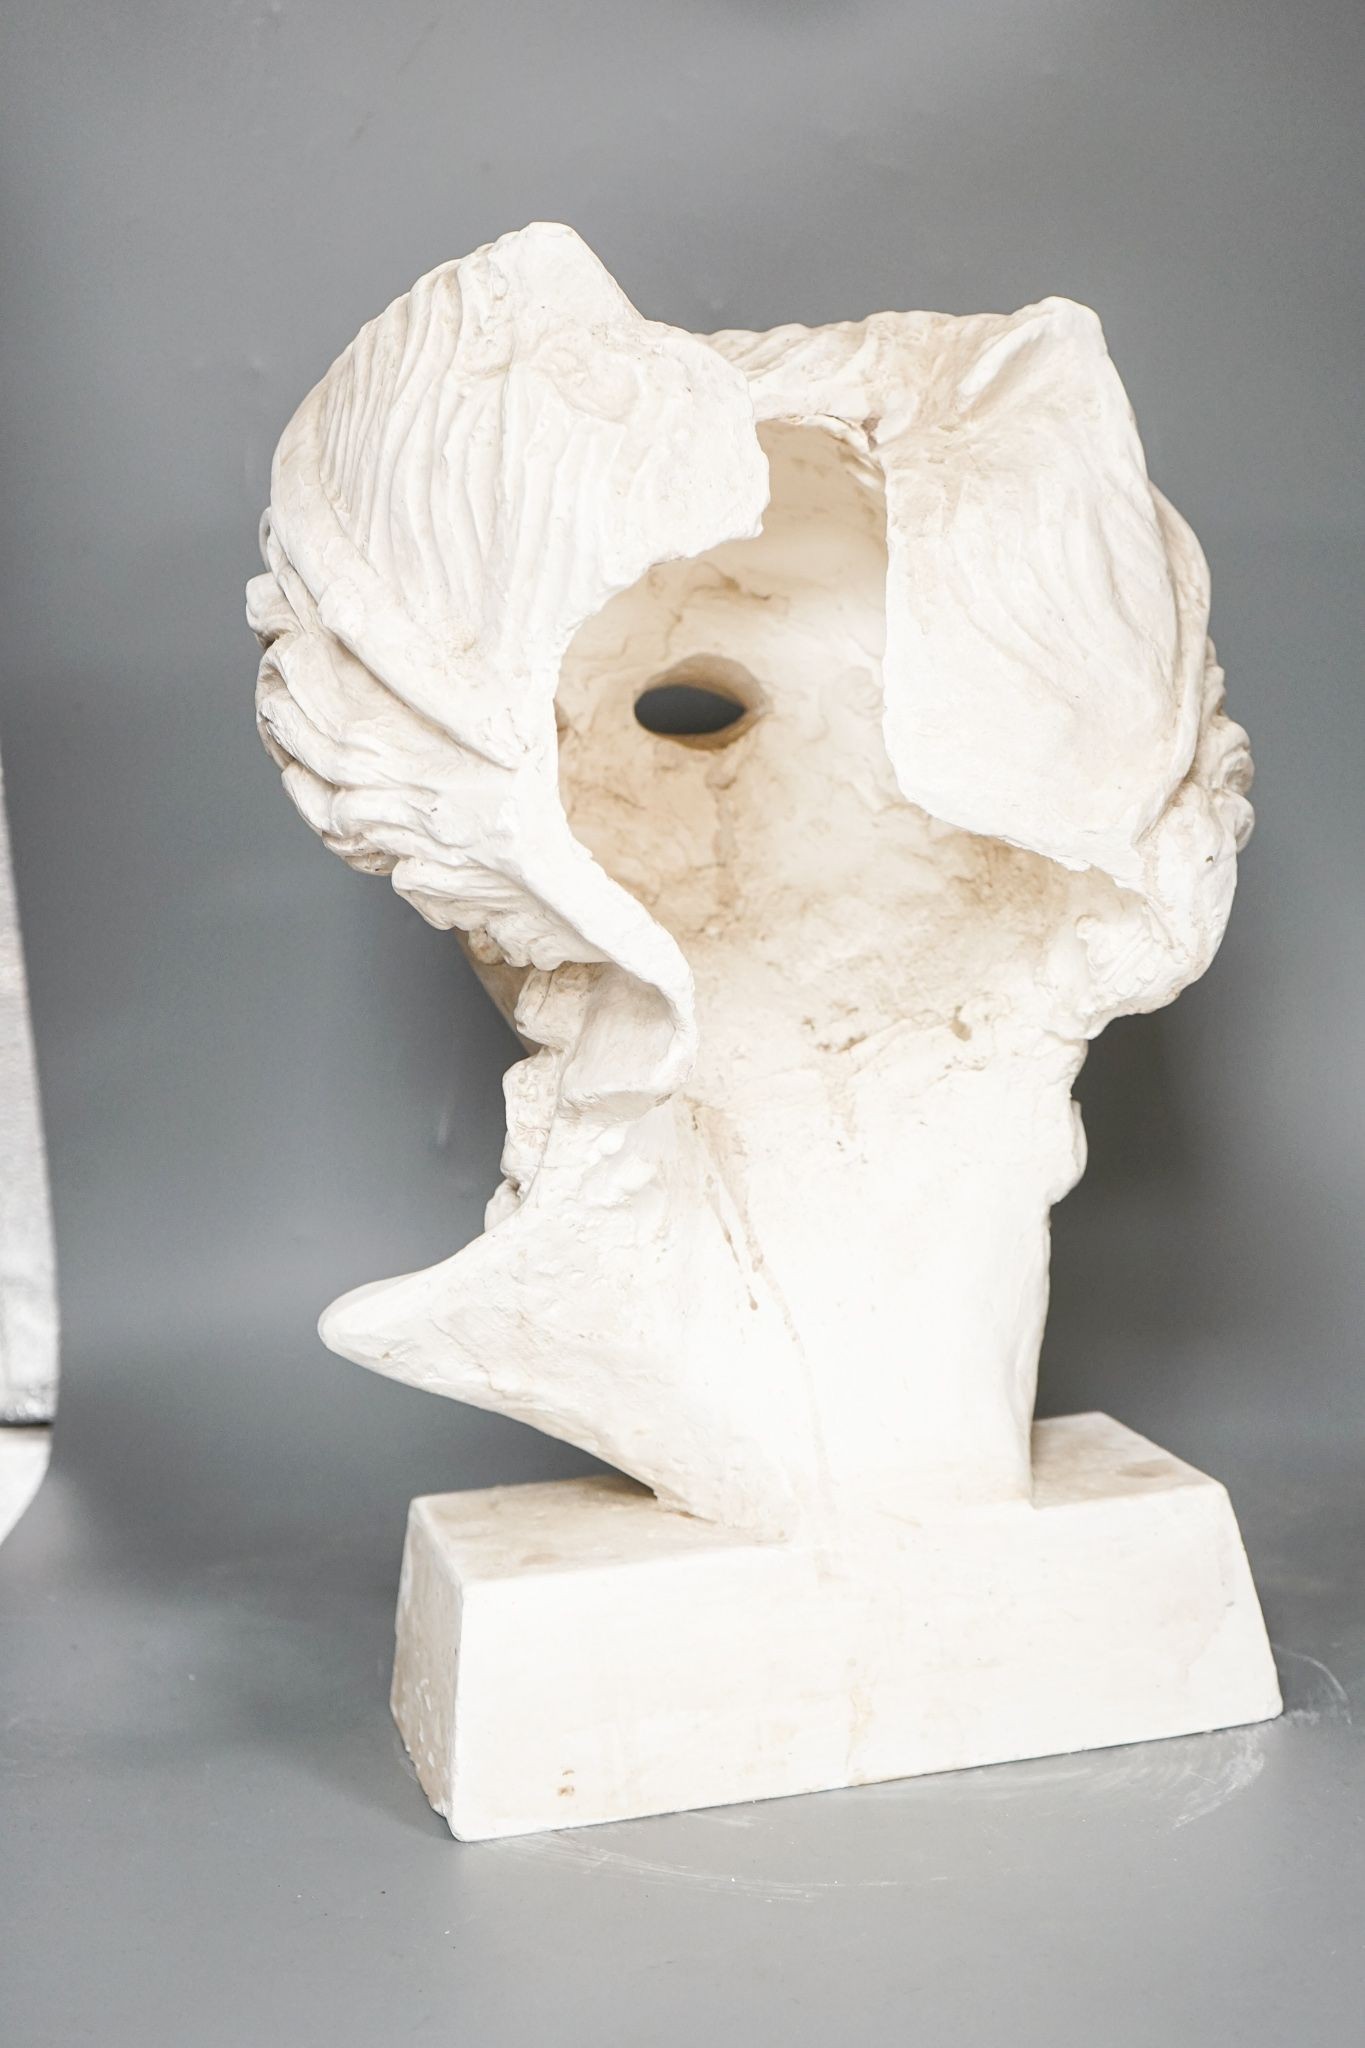 After the antique, a large plaster of Paris bust 45cm